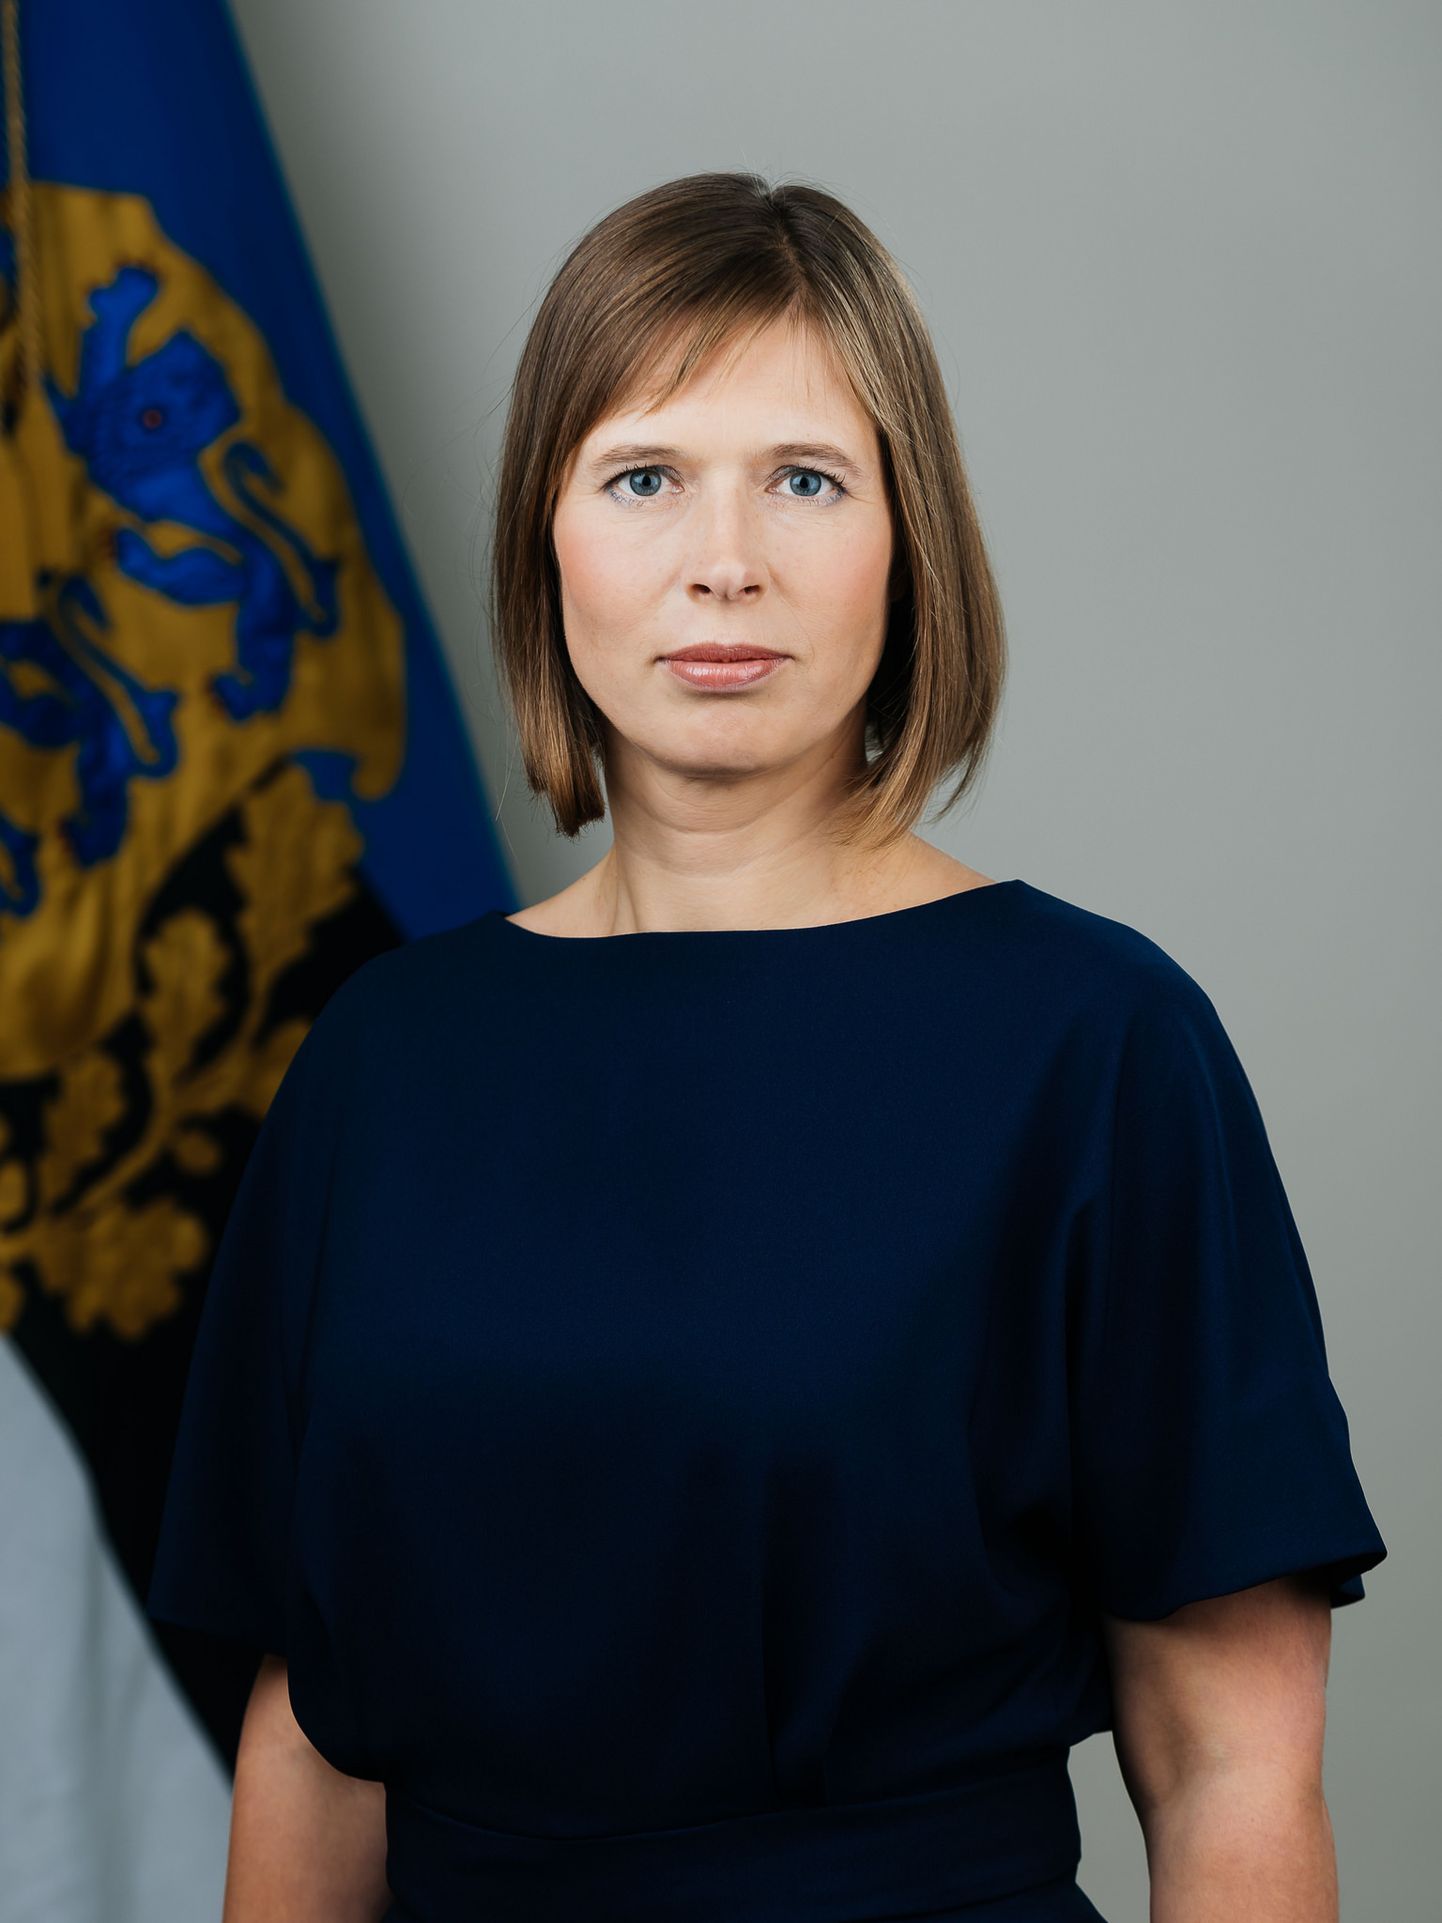 Eesti Vabariigi president Kersti Kaljulaid